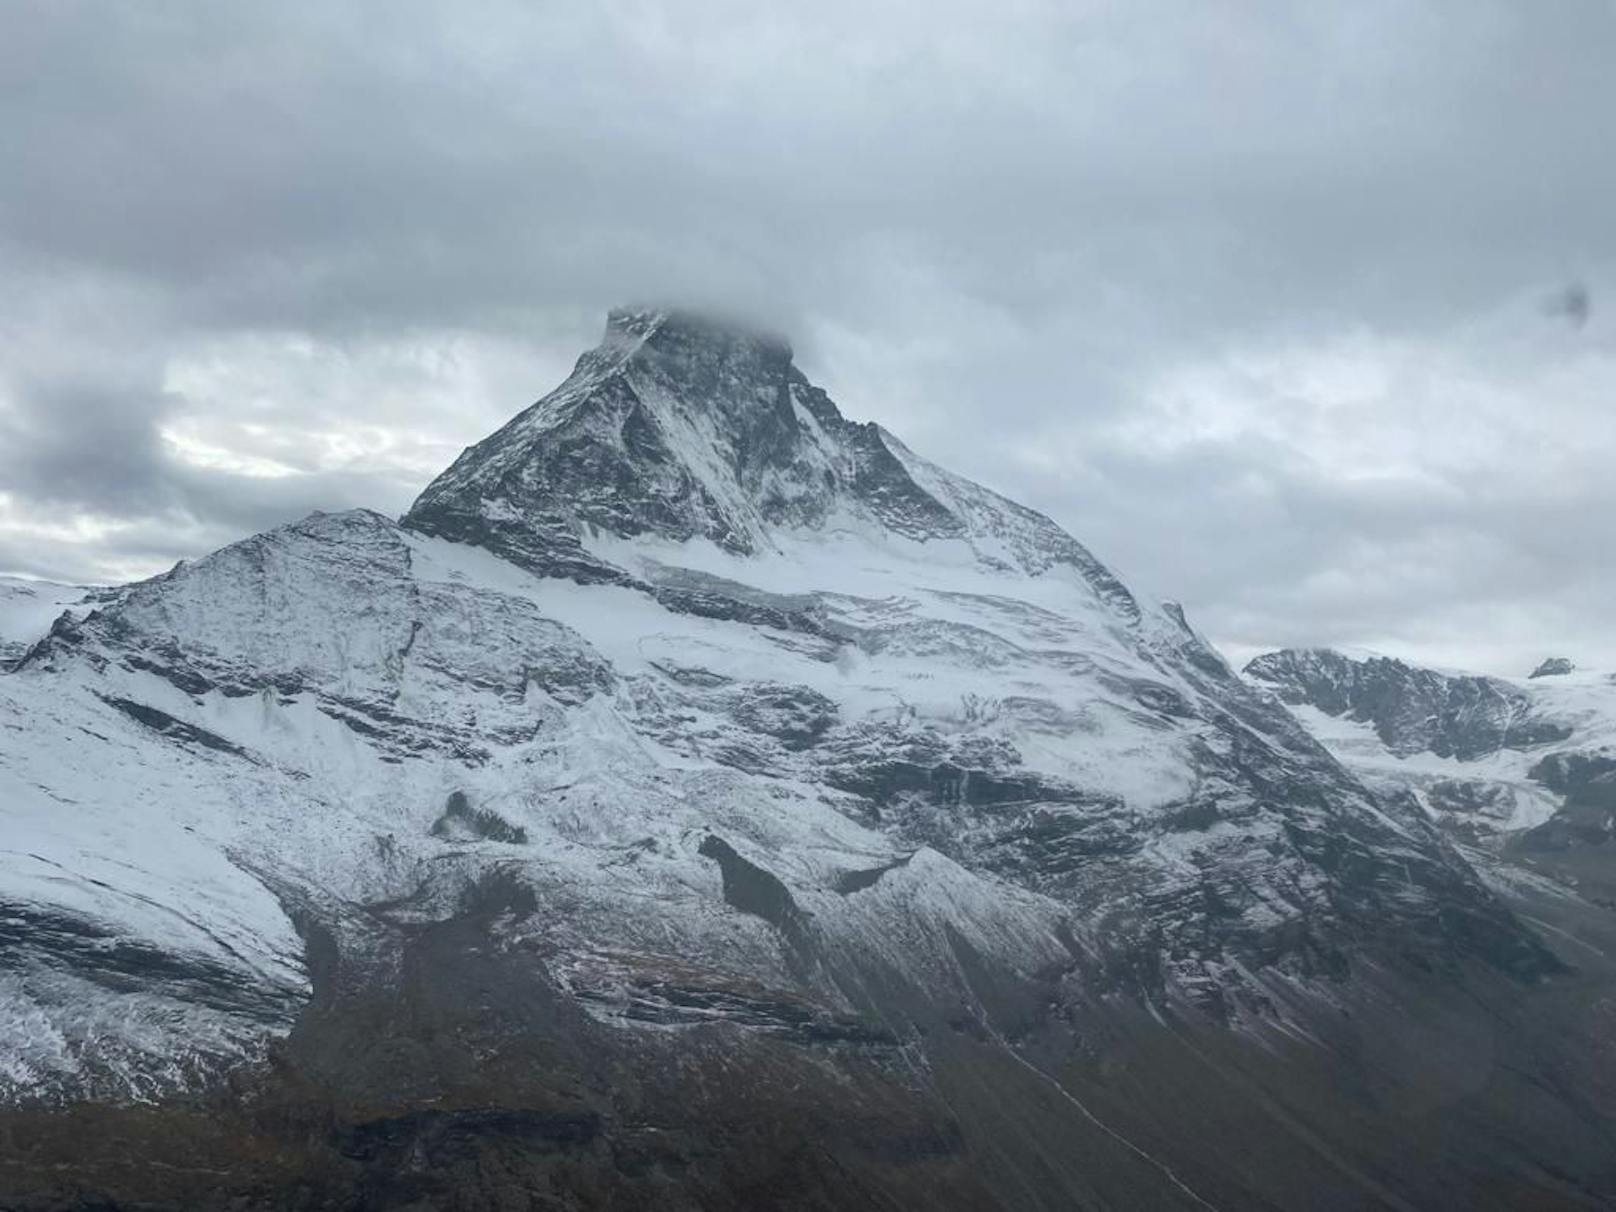 Nächstes Berg-Todesdrama – Duo stürzt am Matterhorn ab